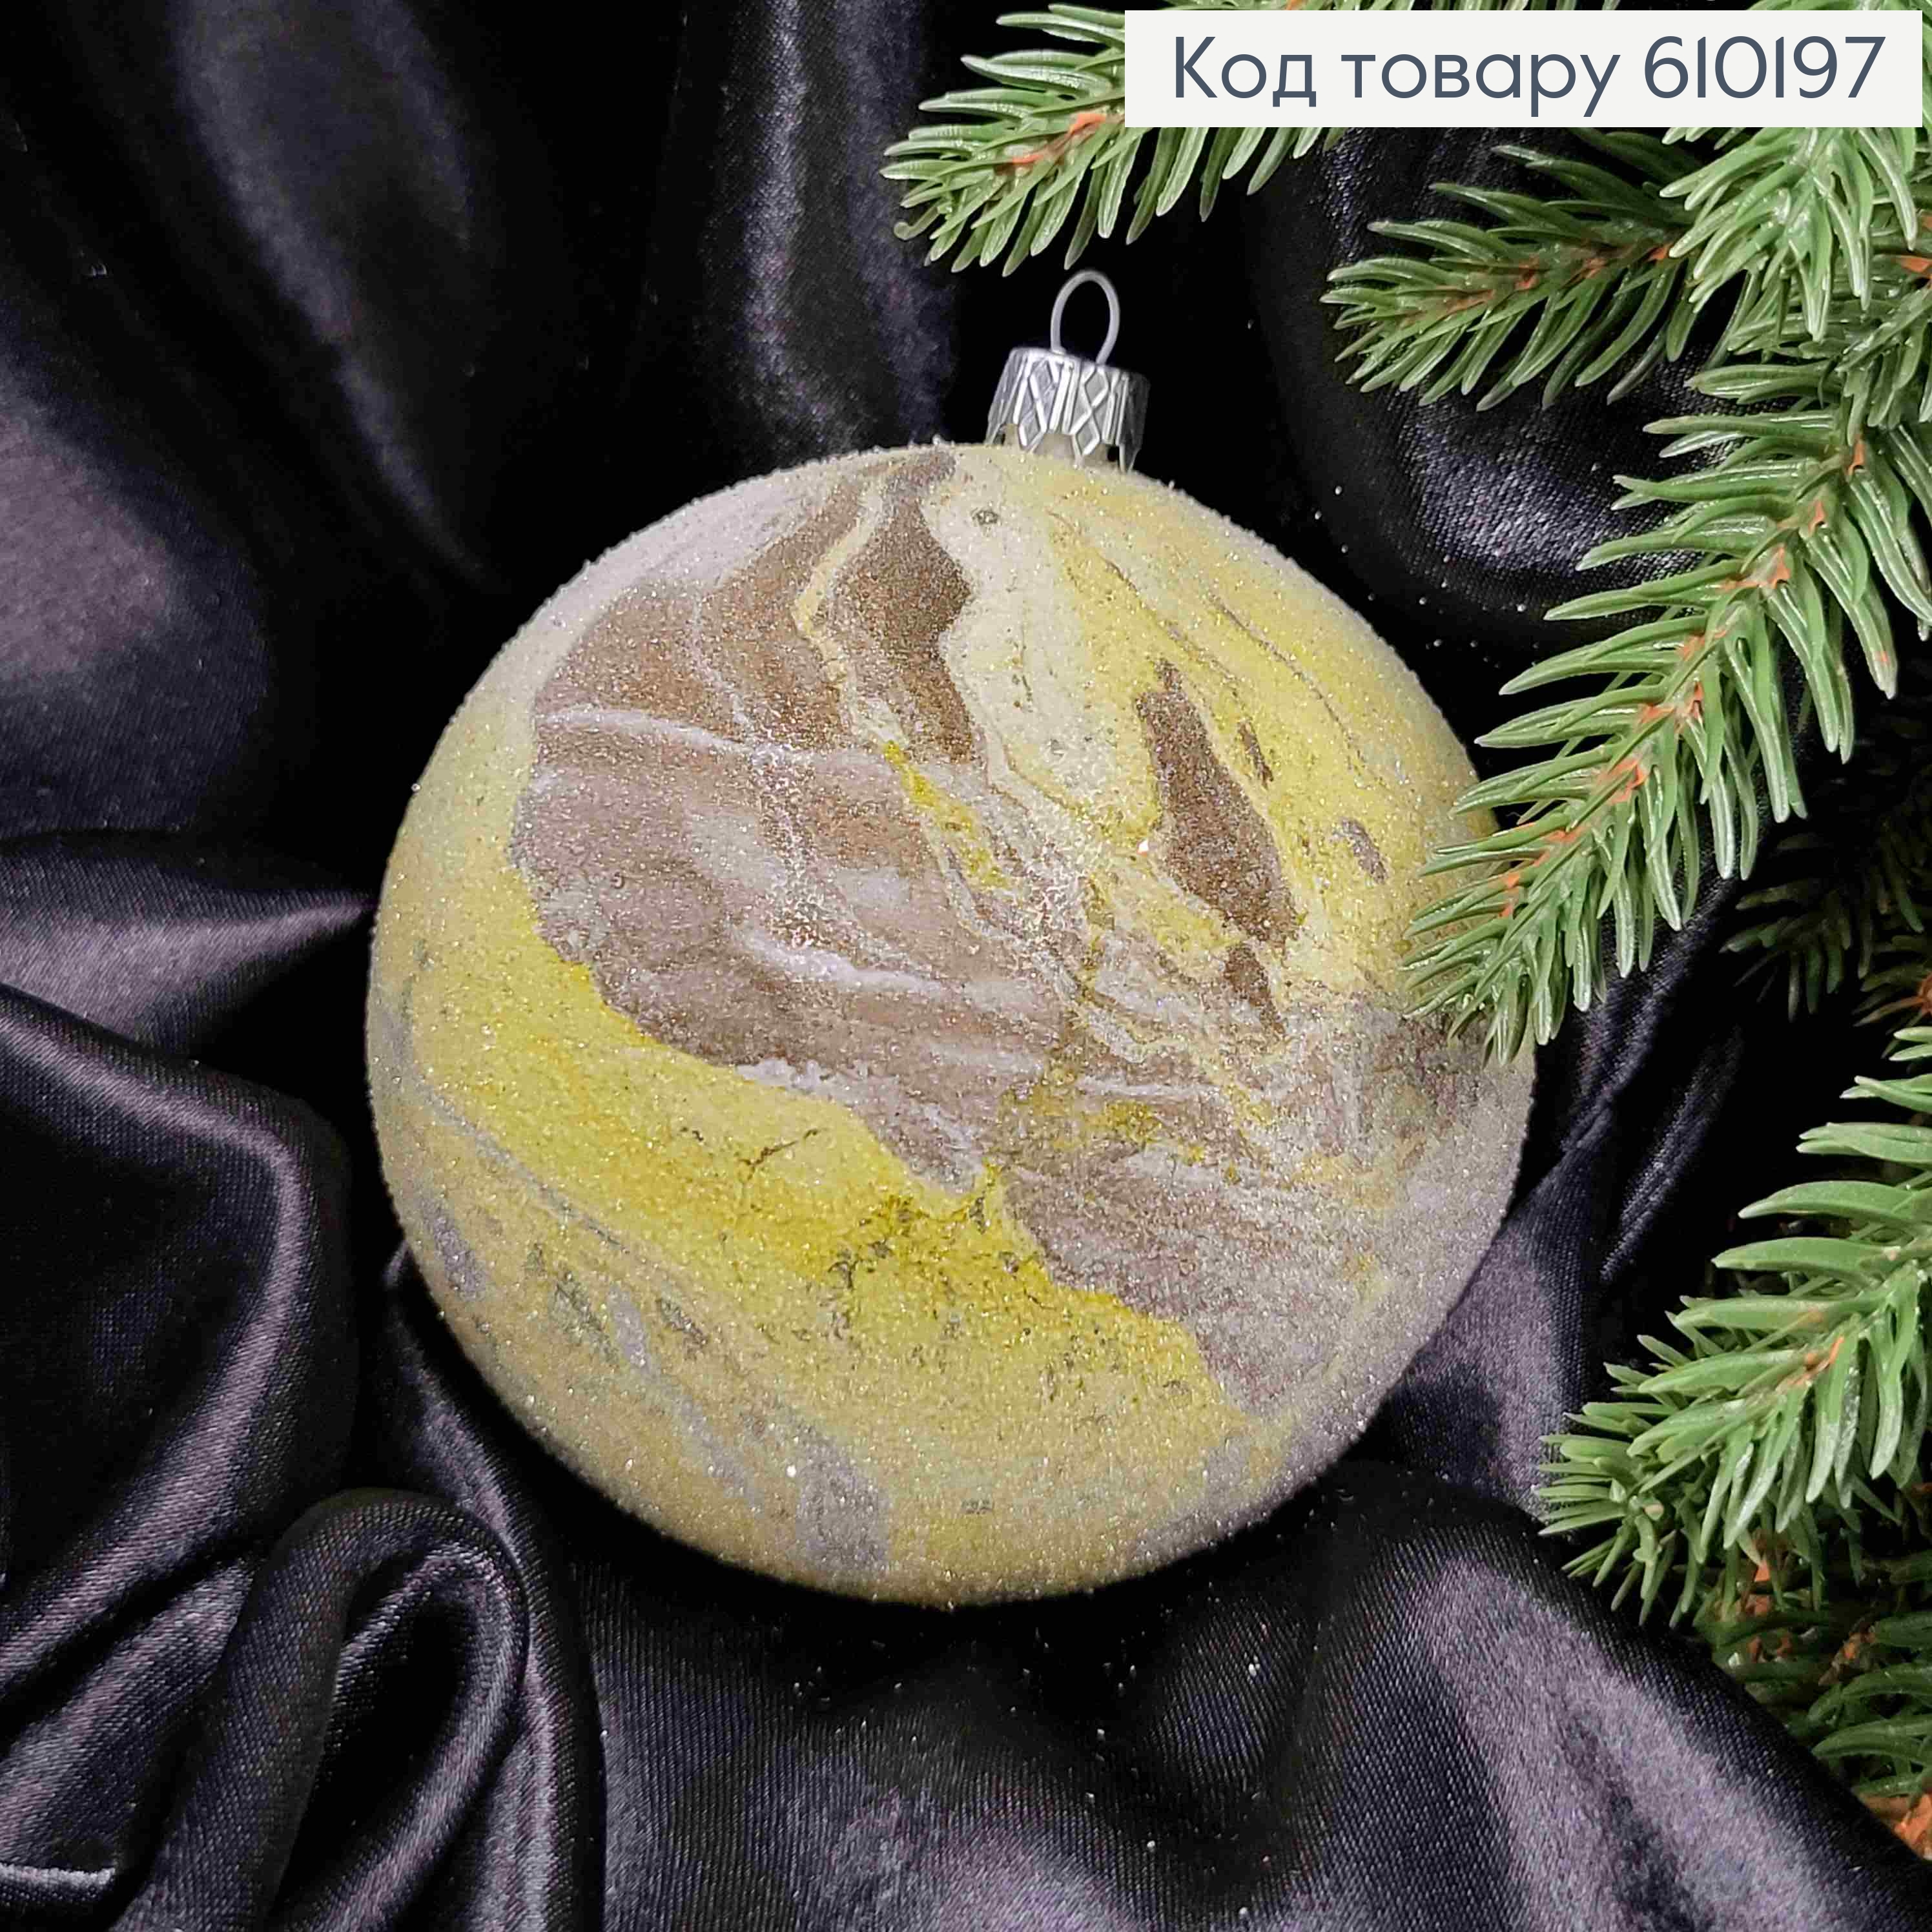 Іграшка куля 100мм ПЛАНЕТА, колір ЖОВТИЙ з КАПУЧІНО, Україна 610197 фото 2